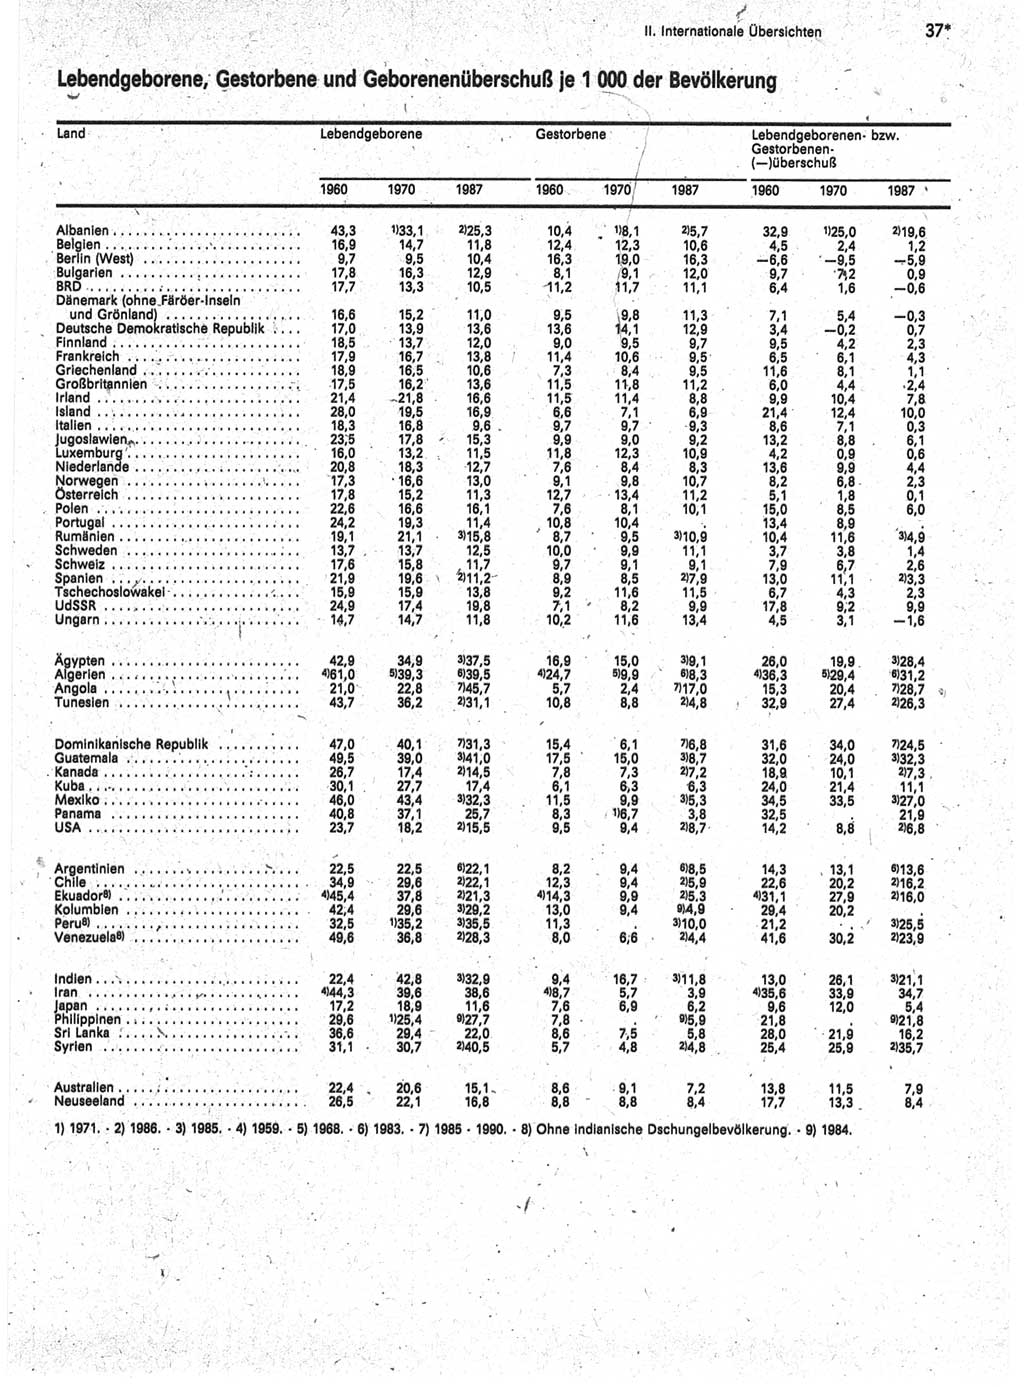 Statistisches Jahrbuch der Deutschen Demokratischen Republik (DDR) 1989, Seite 37 (Stat. Jb. DDR 1989, S. 37)